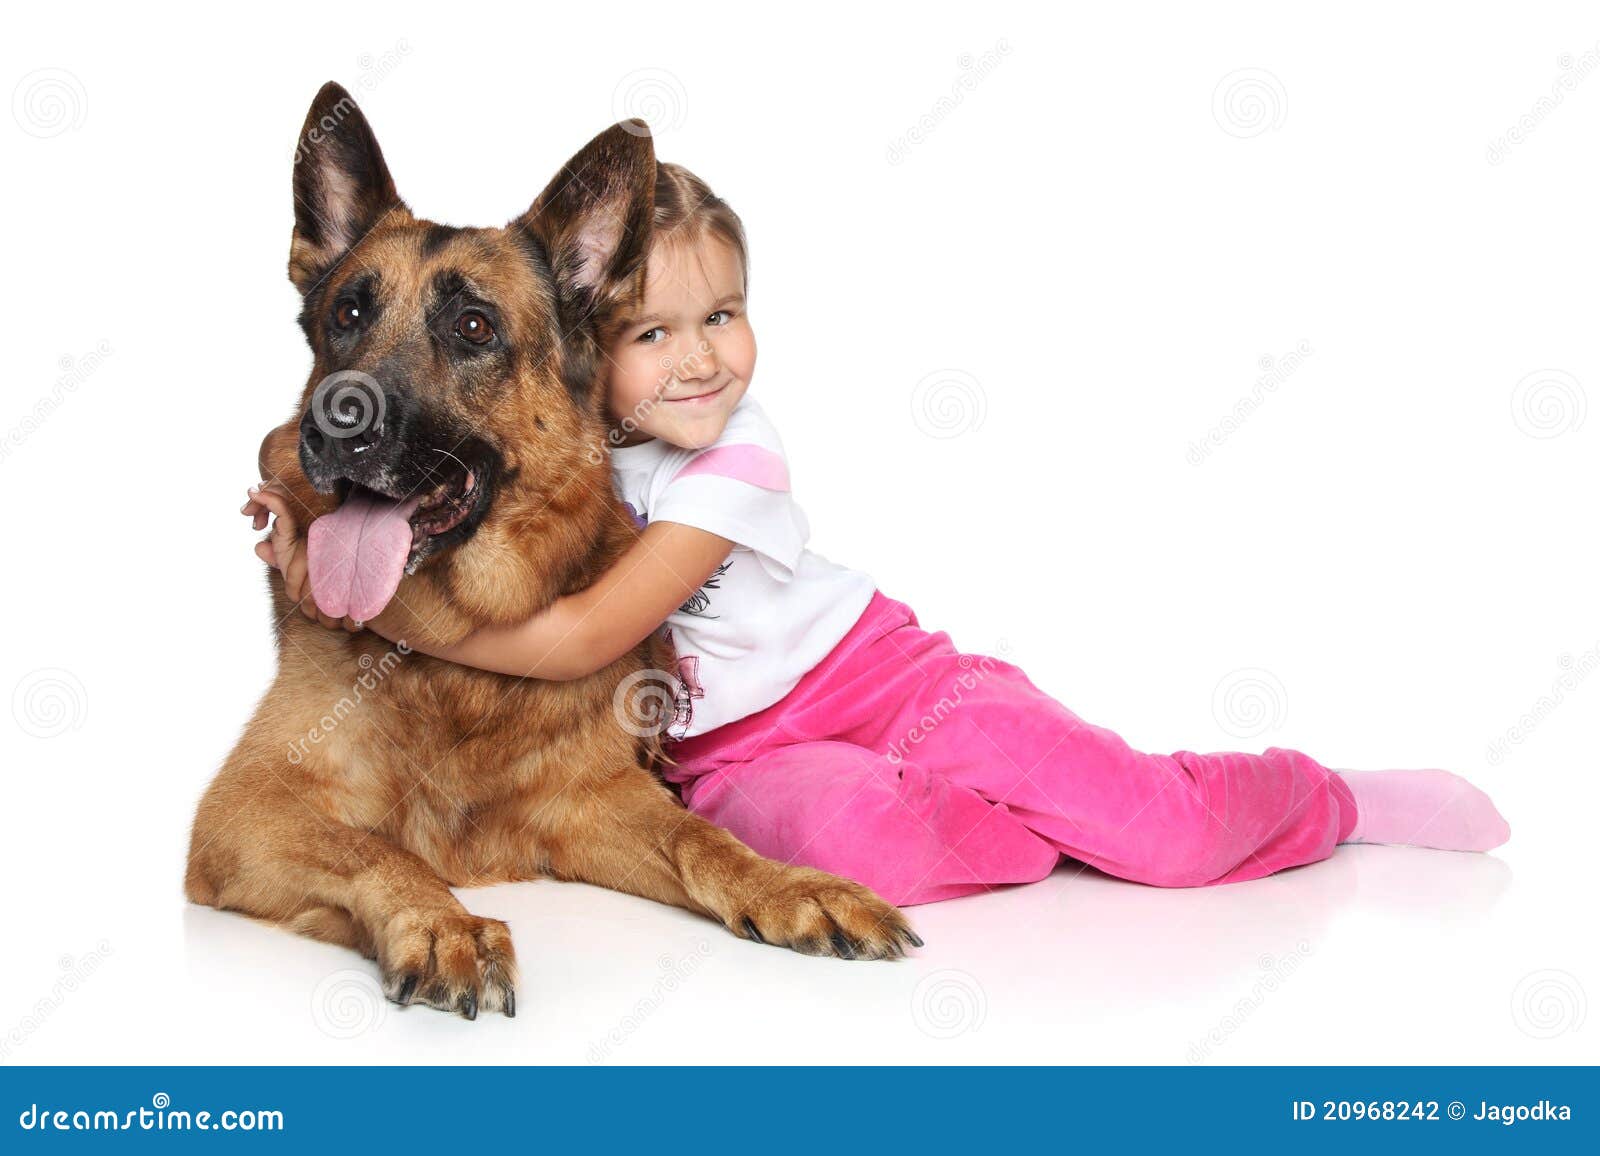 girl and german shepherd dog